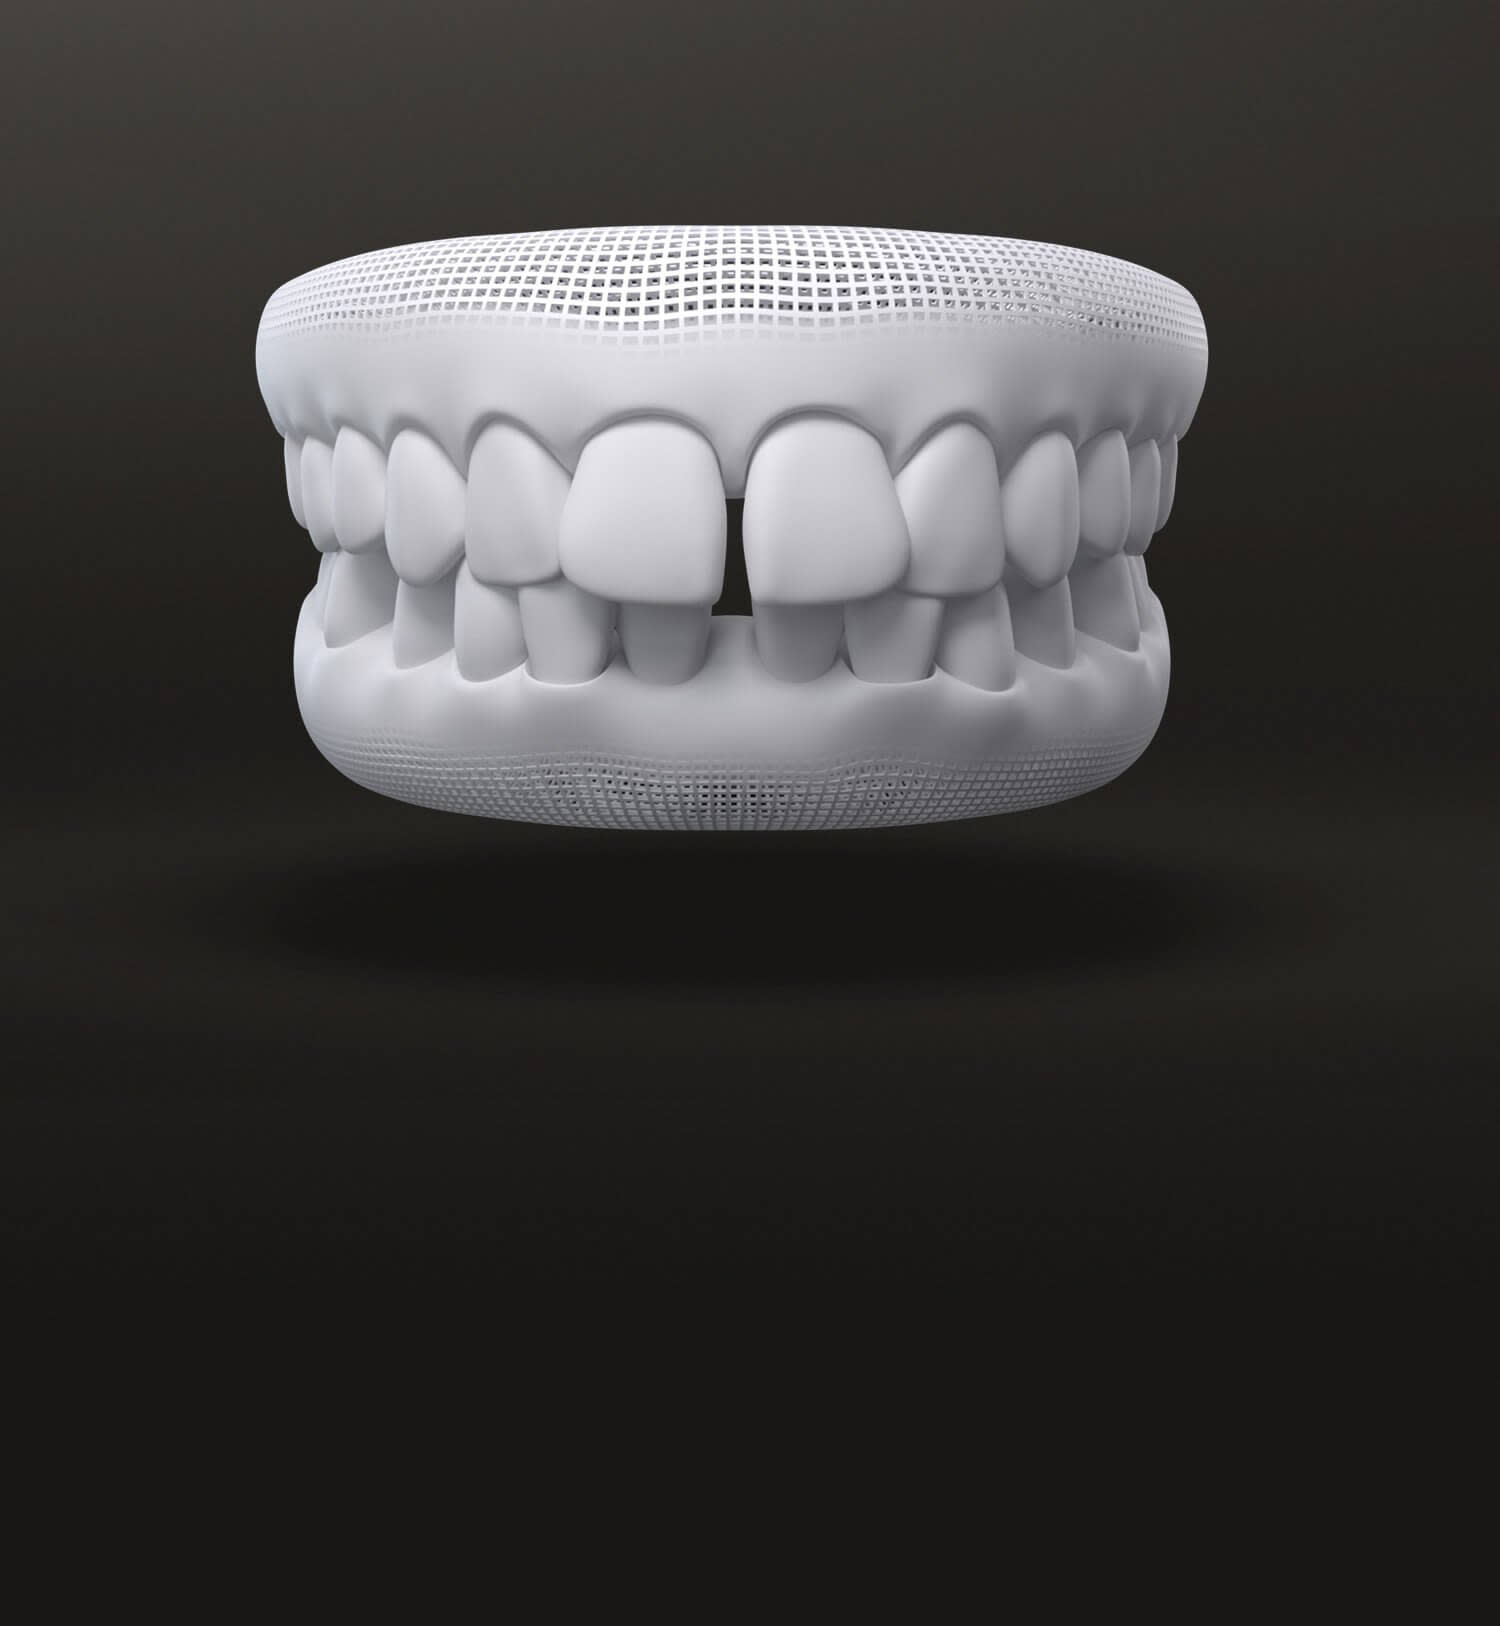 Spazi tra i denti modello 3D: casi trattabili con allineatori dentali Invisalign - Italia